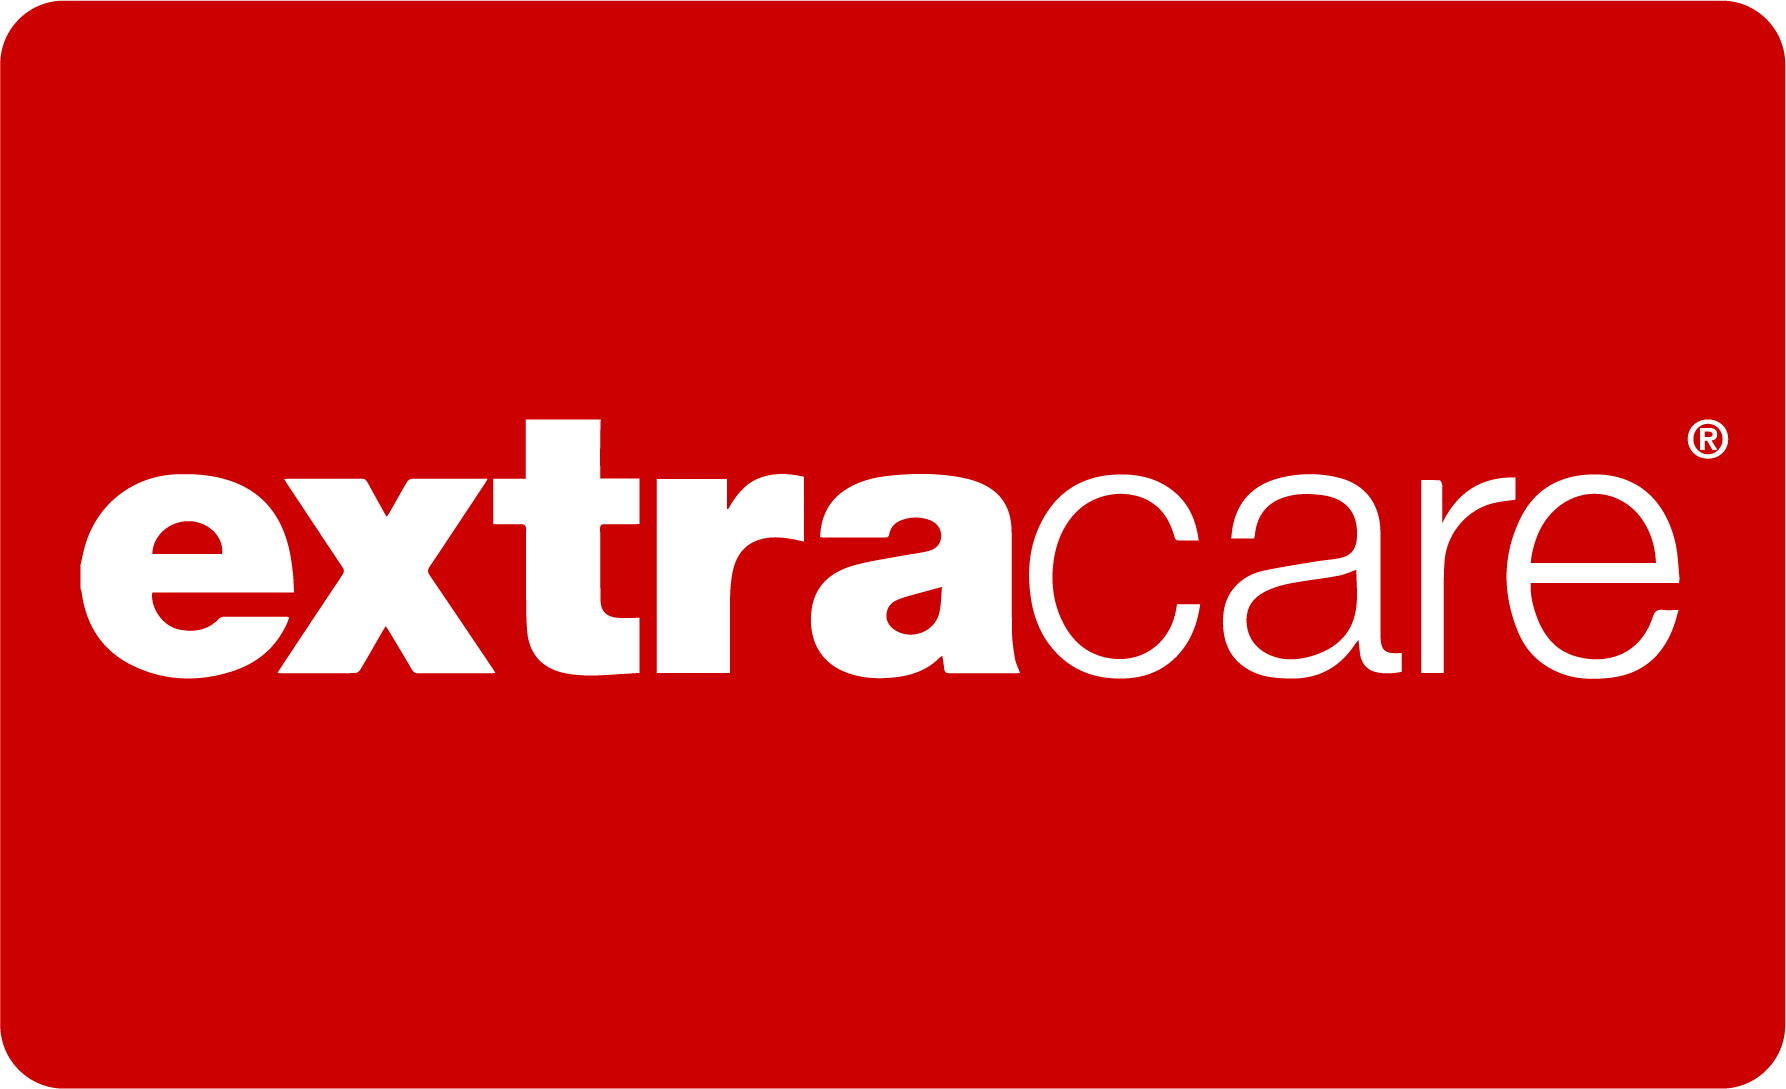 CVS Caremark ExtraCare Health | SAG-AFTRA Plans